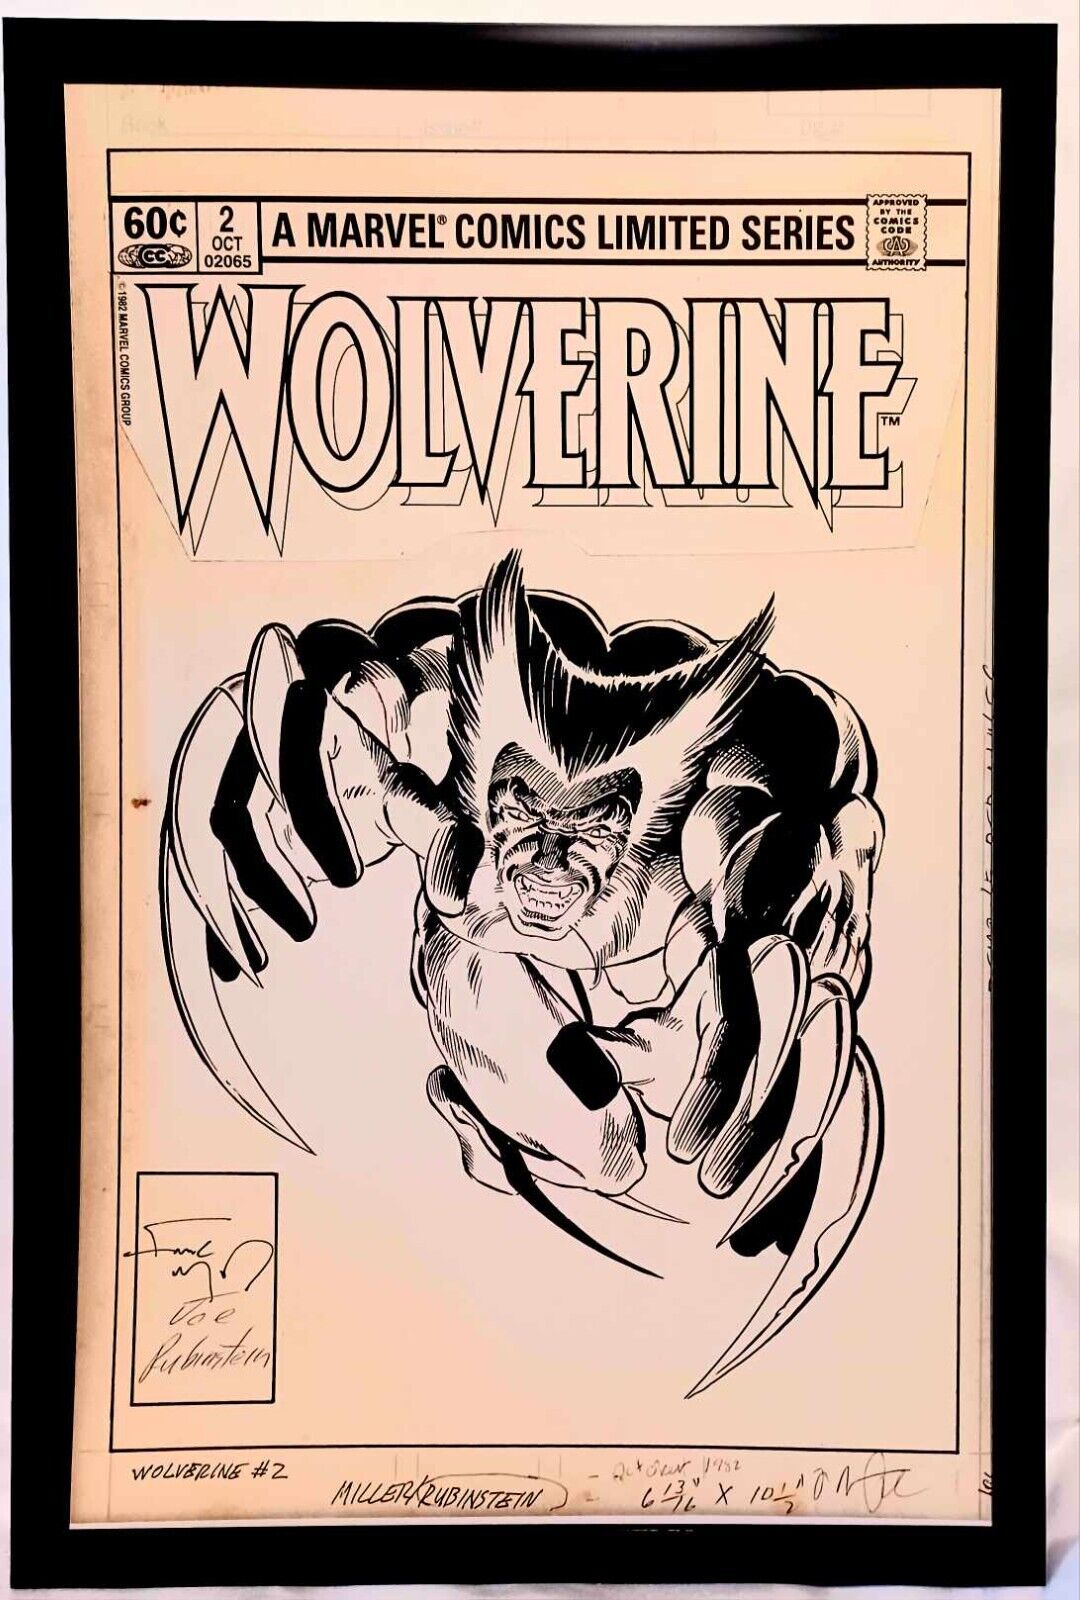 Wolverine #2 by Frank Miller 11x17 FRAMED Original Art Poster Marvel Comics